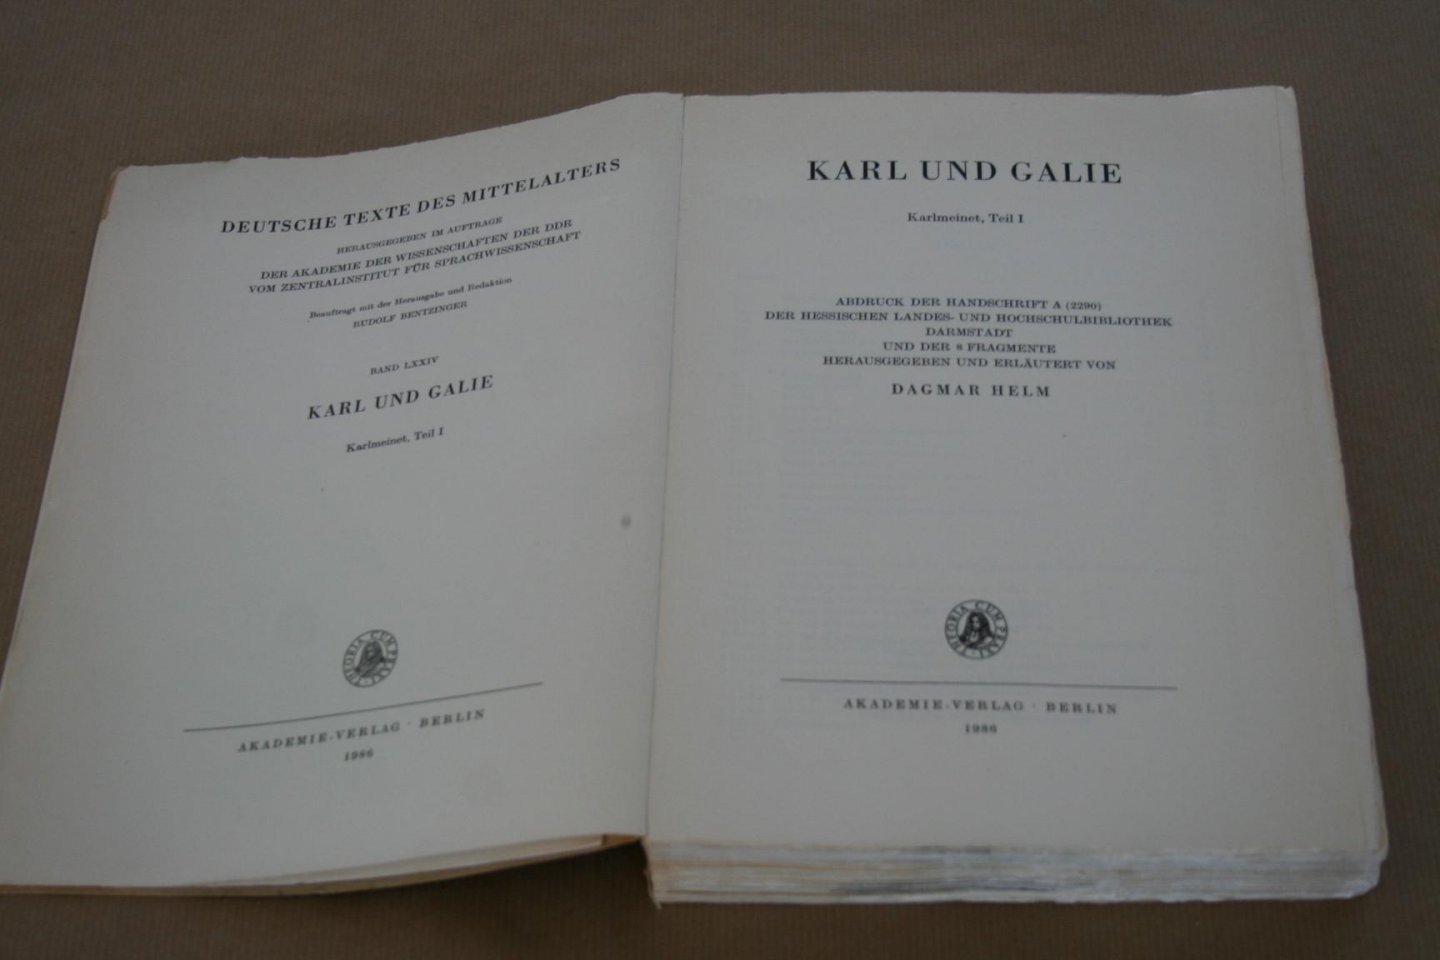  - Karl und Galie -- Karlmeinet   Teil I  (Middeleeuws handschrift)